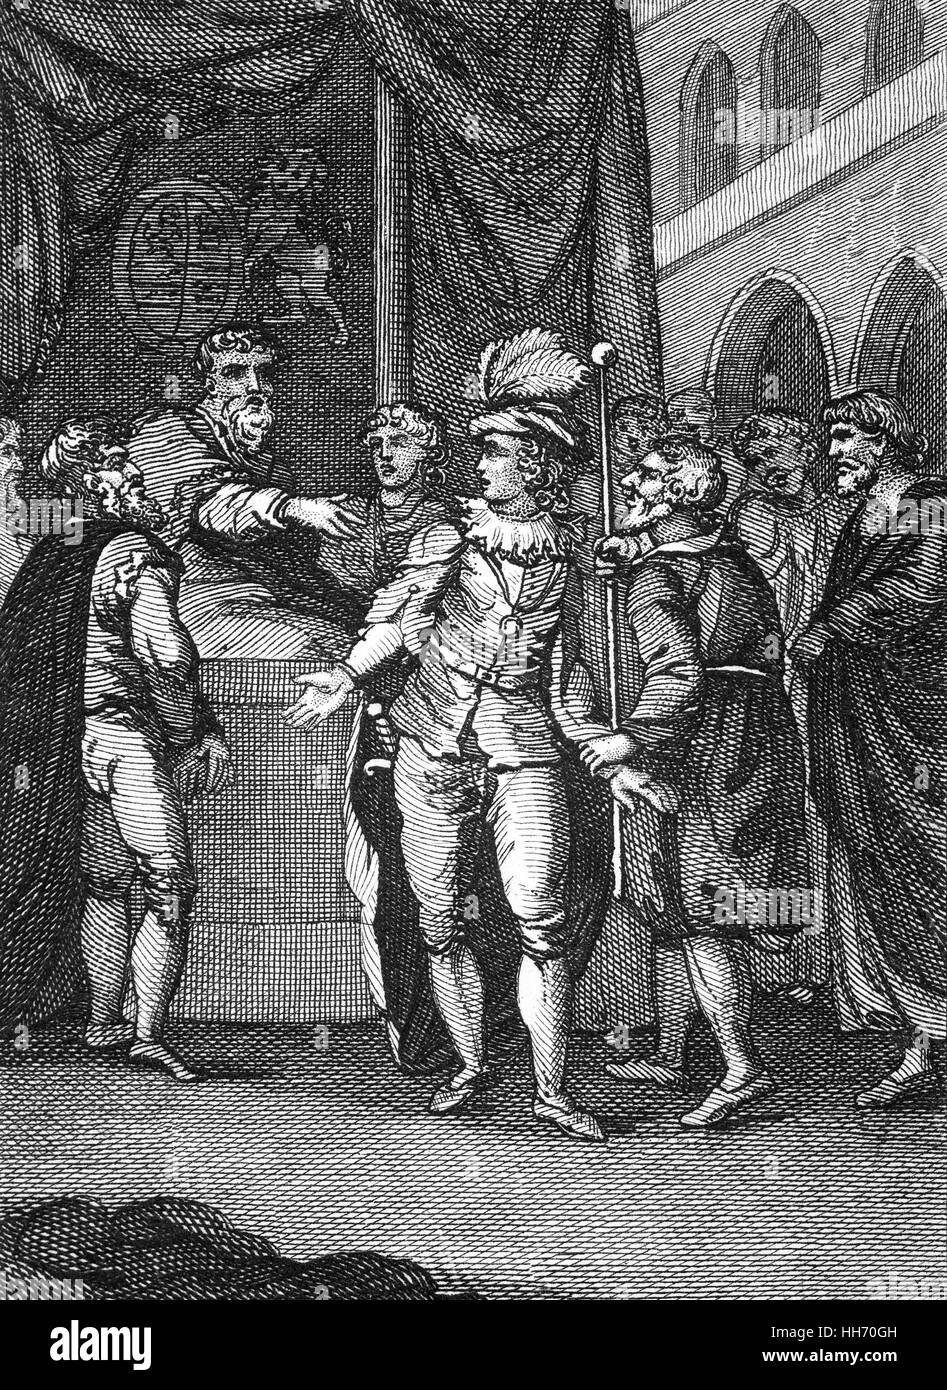 Sir William Gascoigne (1350 – 1419) war Chief Justice of England während der Regierungszeit von König Henry IV.  Es wird gesagt, dass Gascoine die Strafe von einer der Prince Of Wales (der zukünftige Henry V) lärmenden Begleiter geleitet hatte. Der Prinz, der war wütend auf den Satz und grob beleidigt den Richter. Gascoigne sofort verpflichtet ihn ins Gefängnis, und gab dem Prinzen ein Dressing-down, die ihn die Gerechtigkeit des Satzes erkennen ließen. Stockfoto